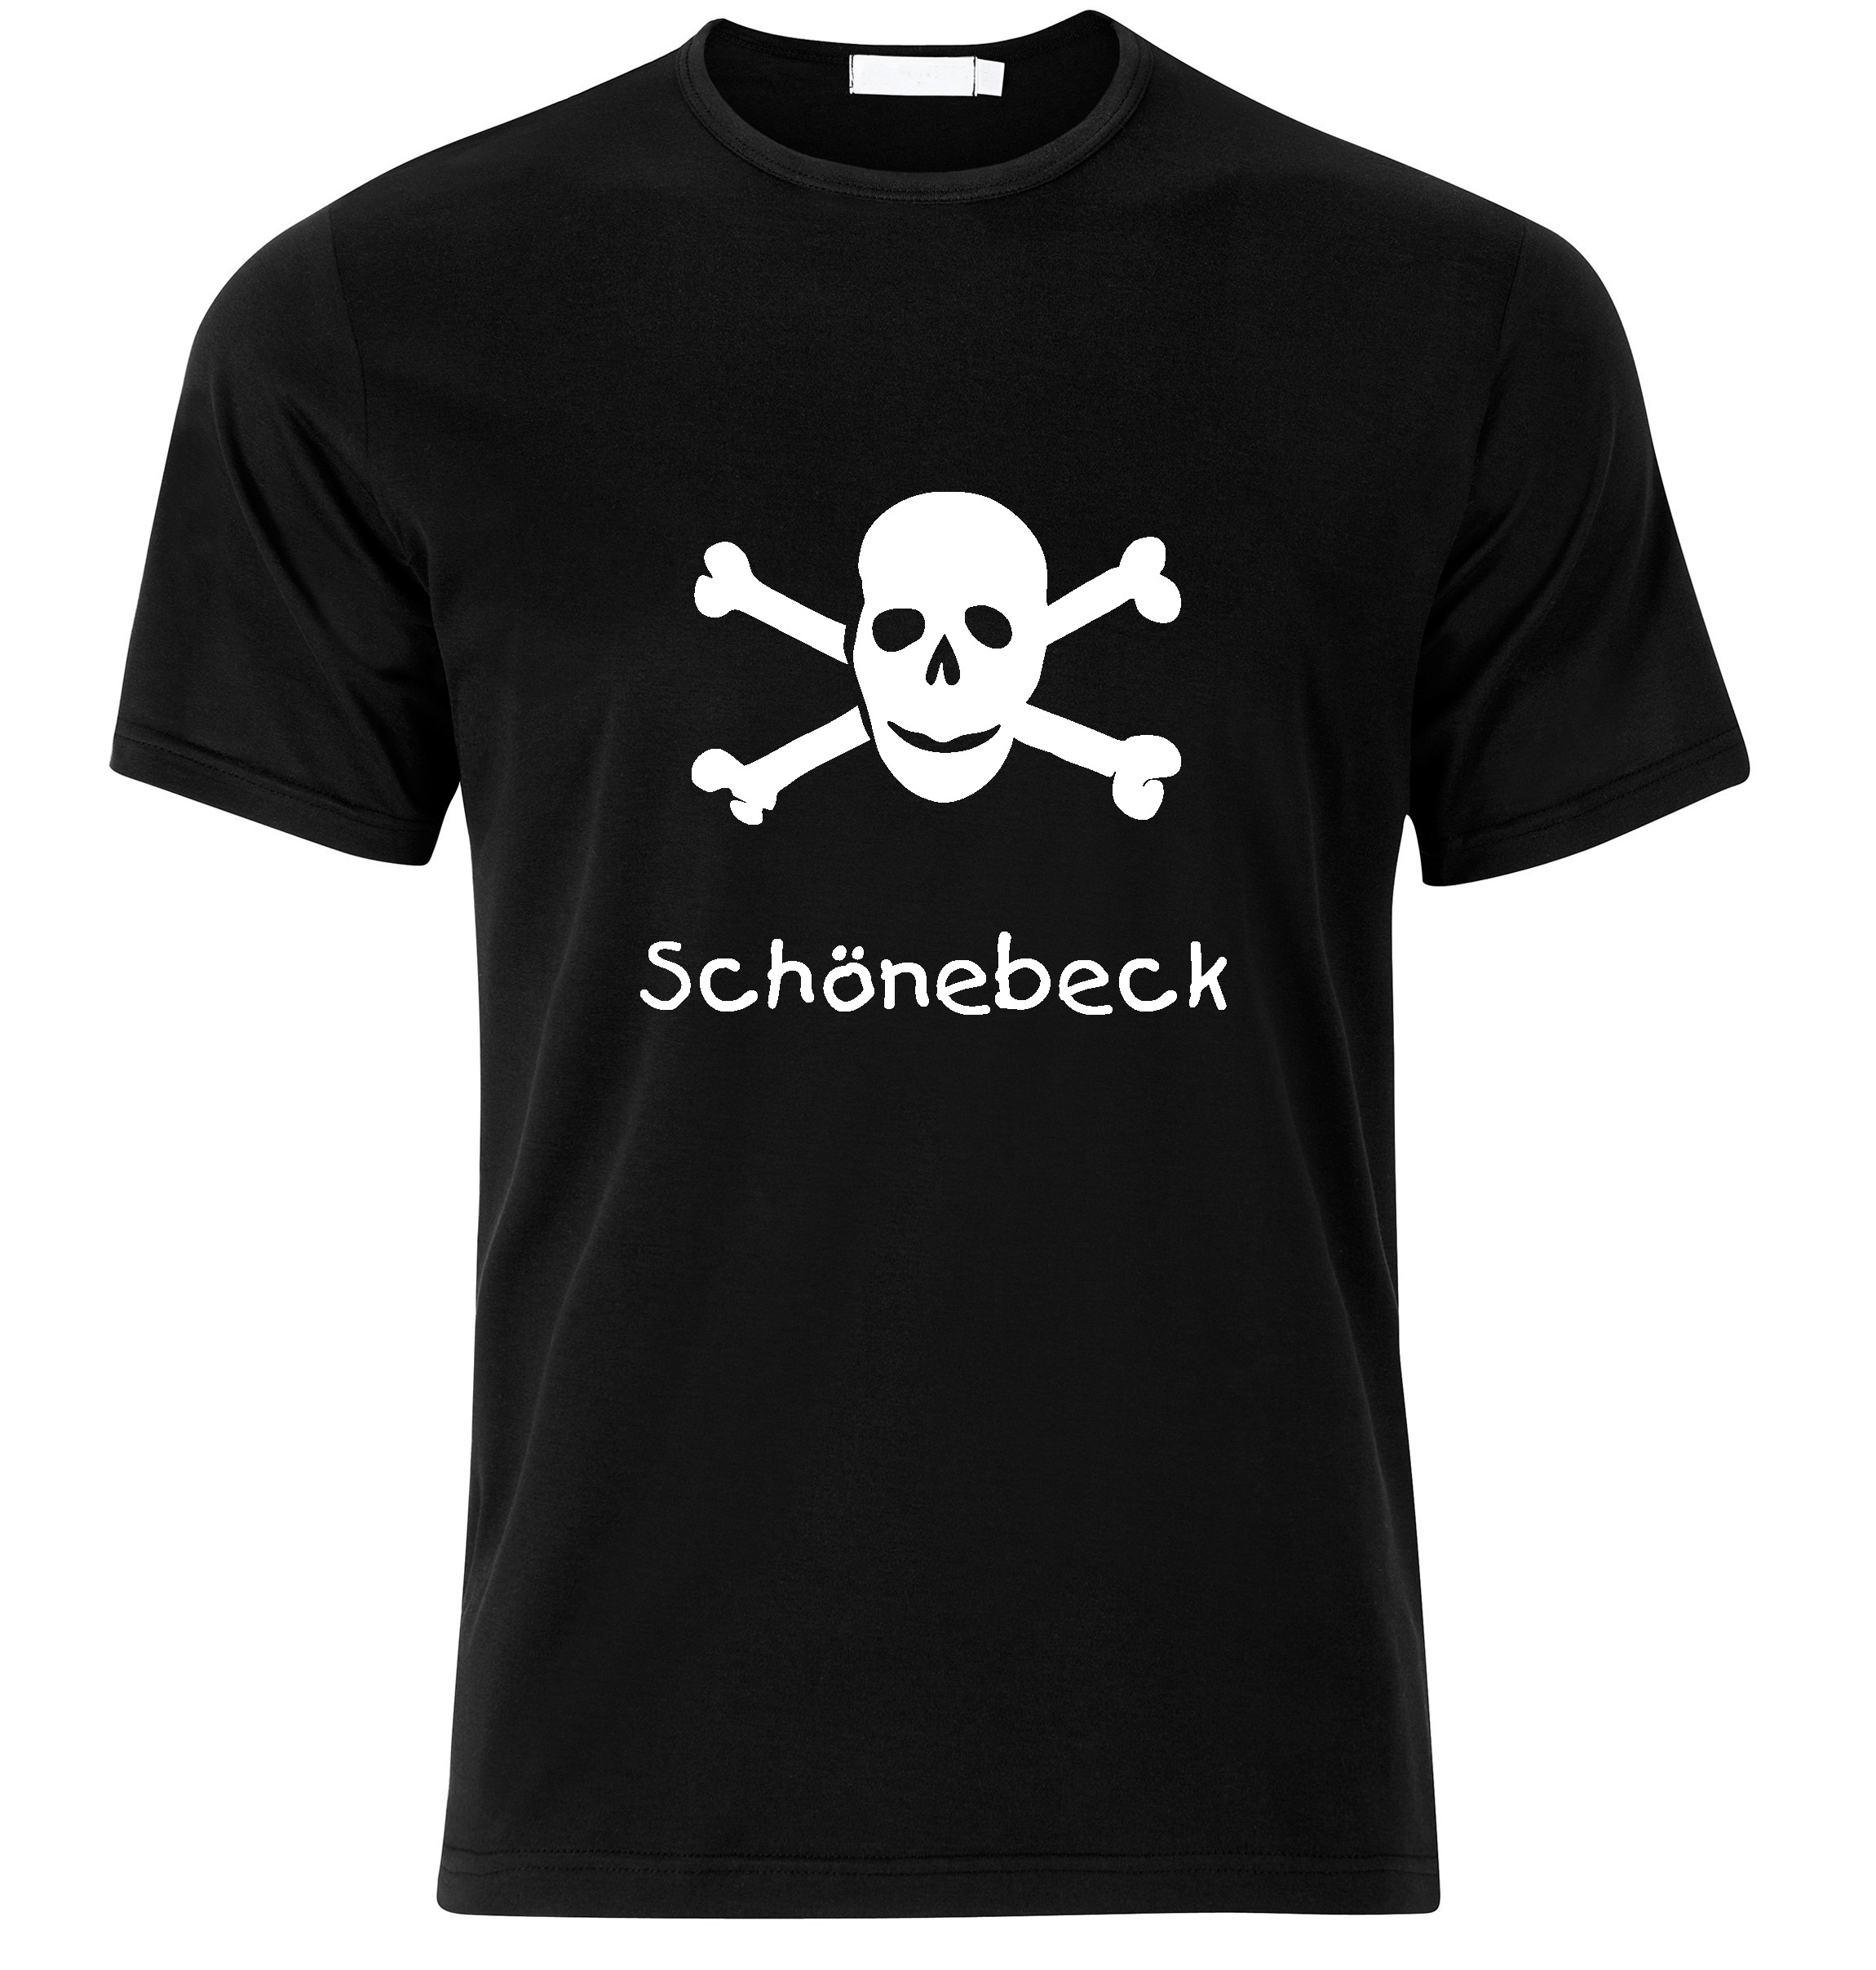 T-Shirt Schönebeck Jolly Roger, Totenkopf